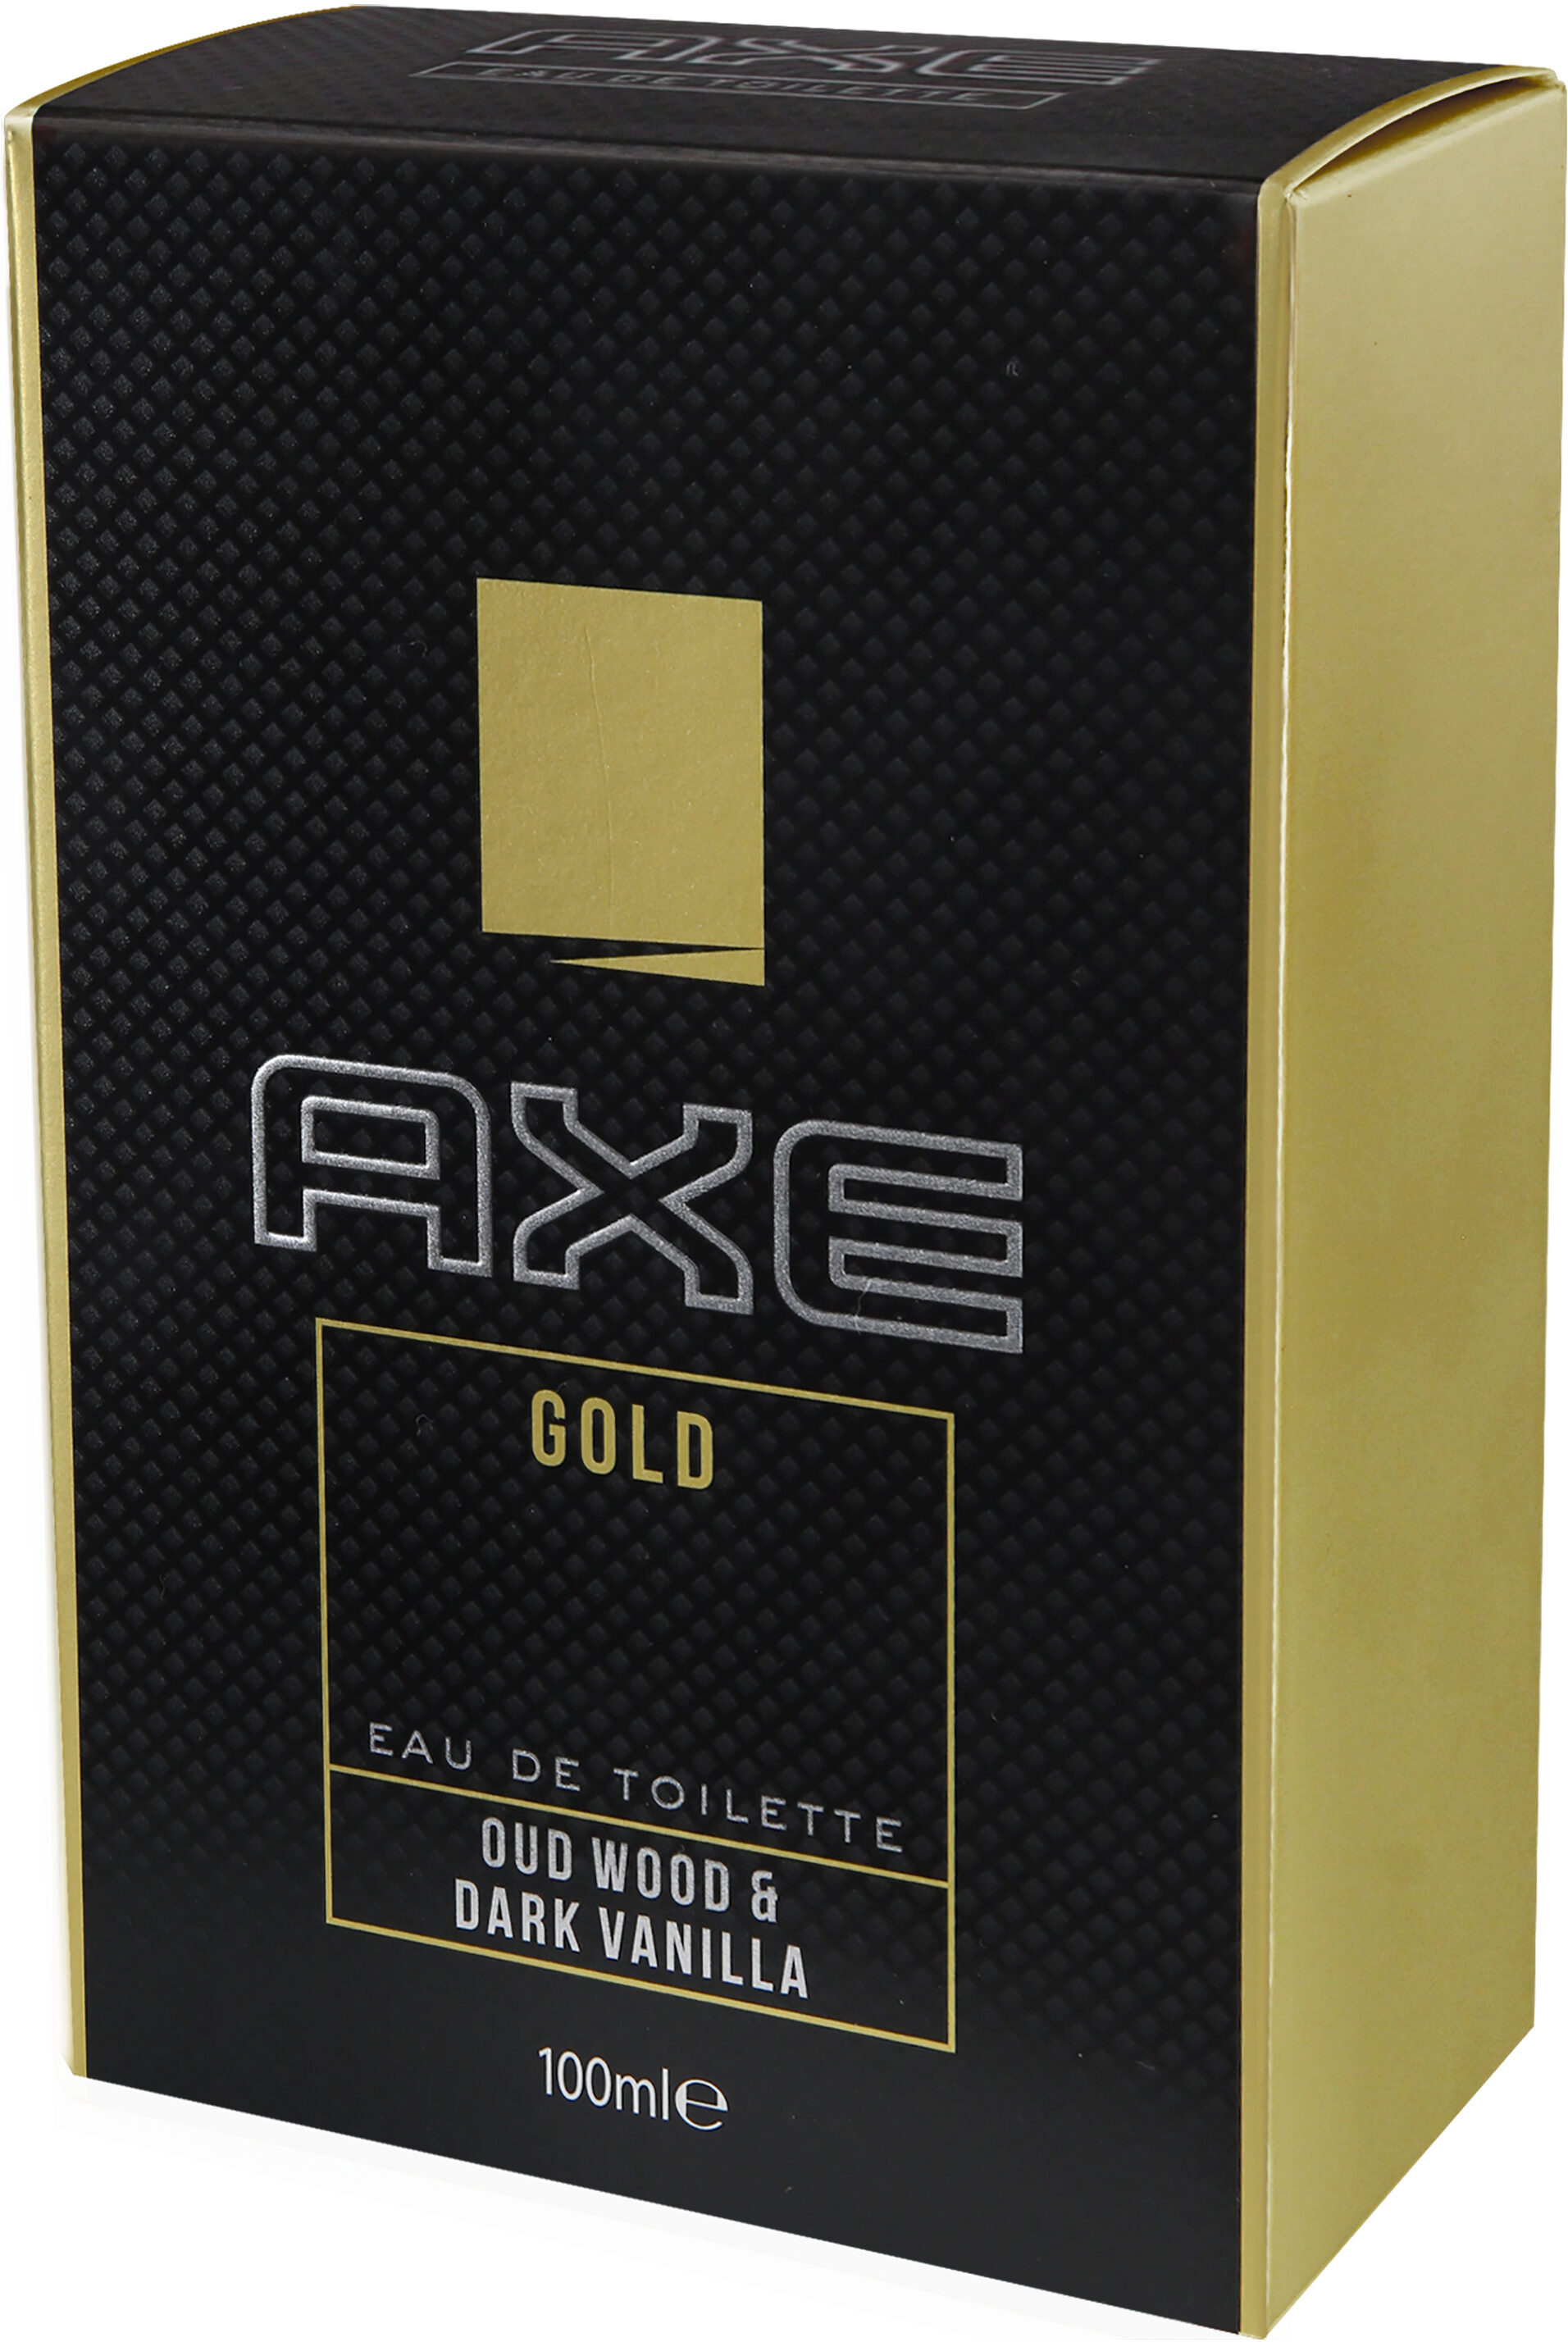 AXE Eau De Toilette Gold - Product - fr